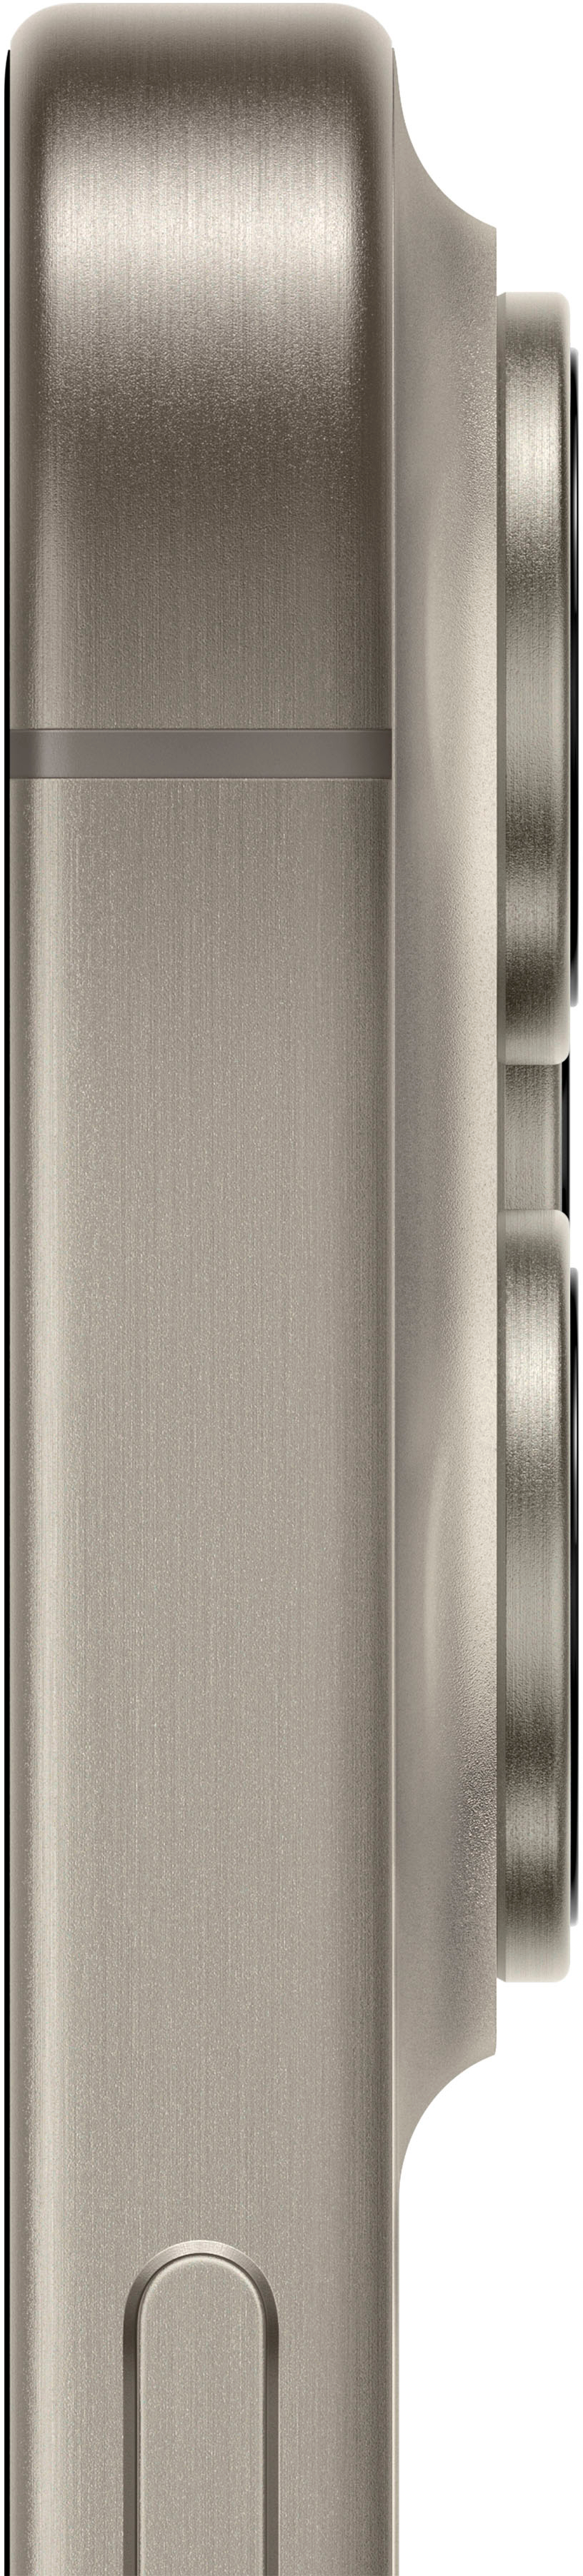 Apple iPhone 15 Pro - 1 TB - Natural Titanium  - Verizon